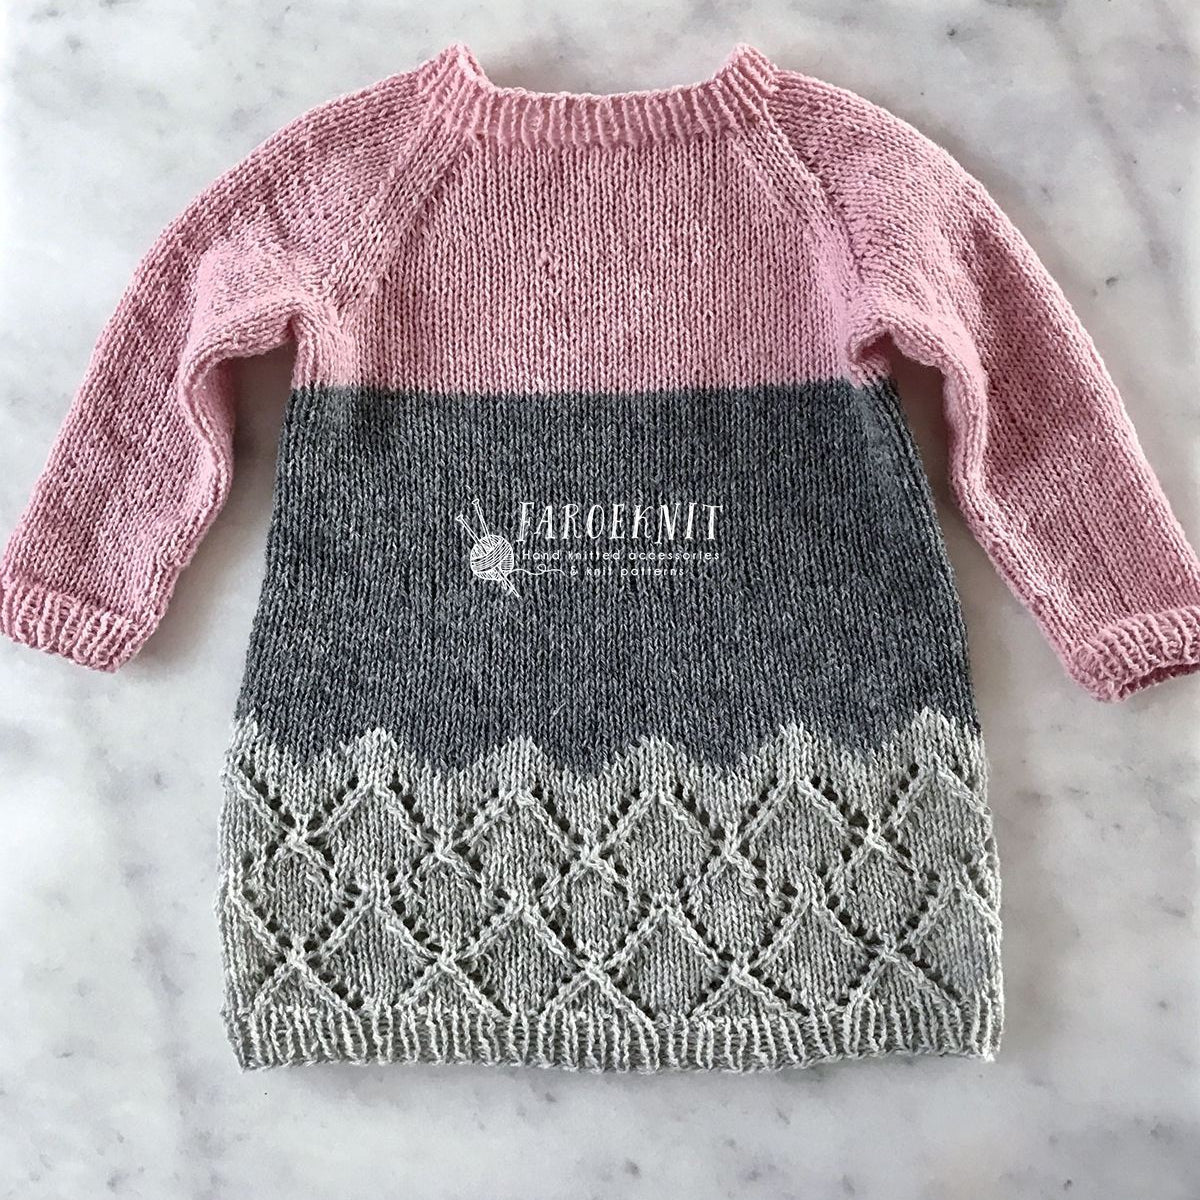 Hipster dress PDF knit pattern